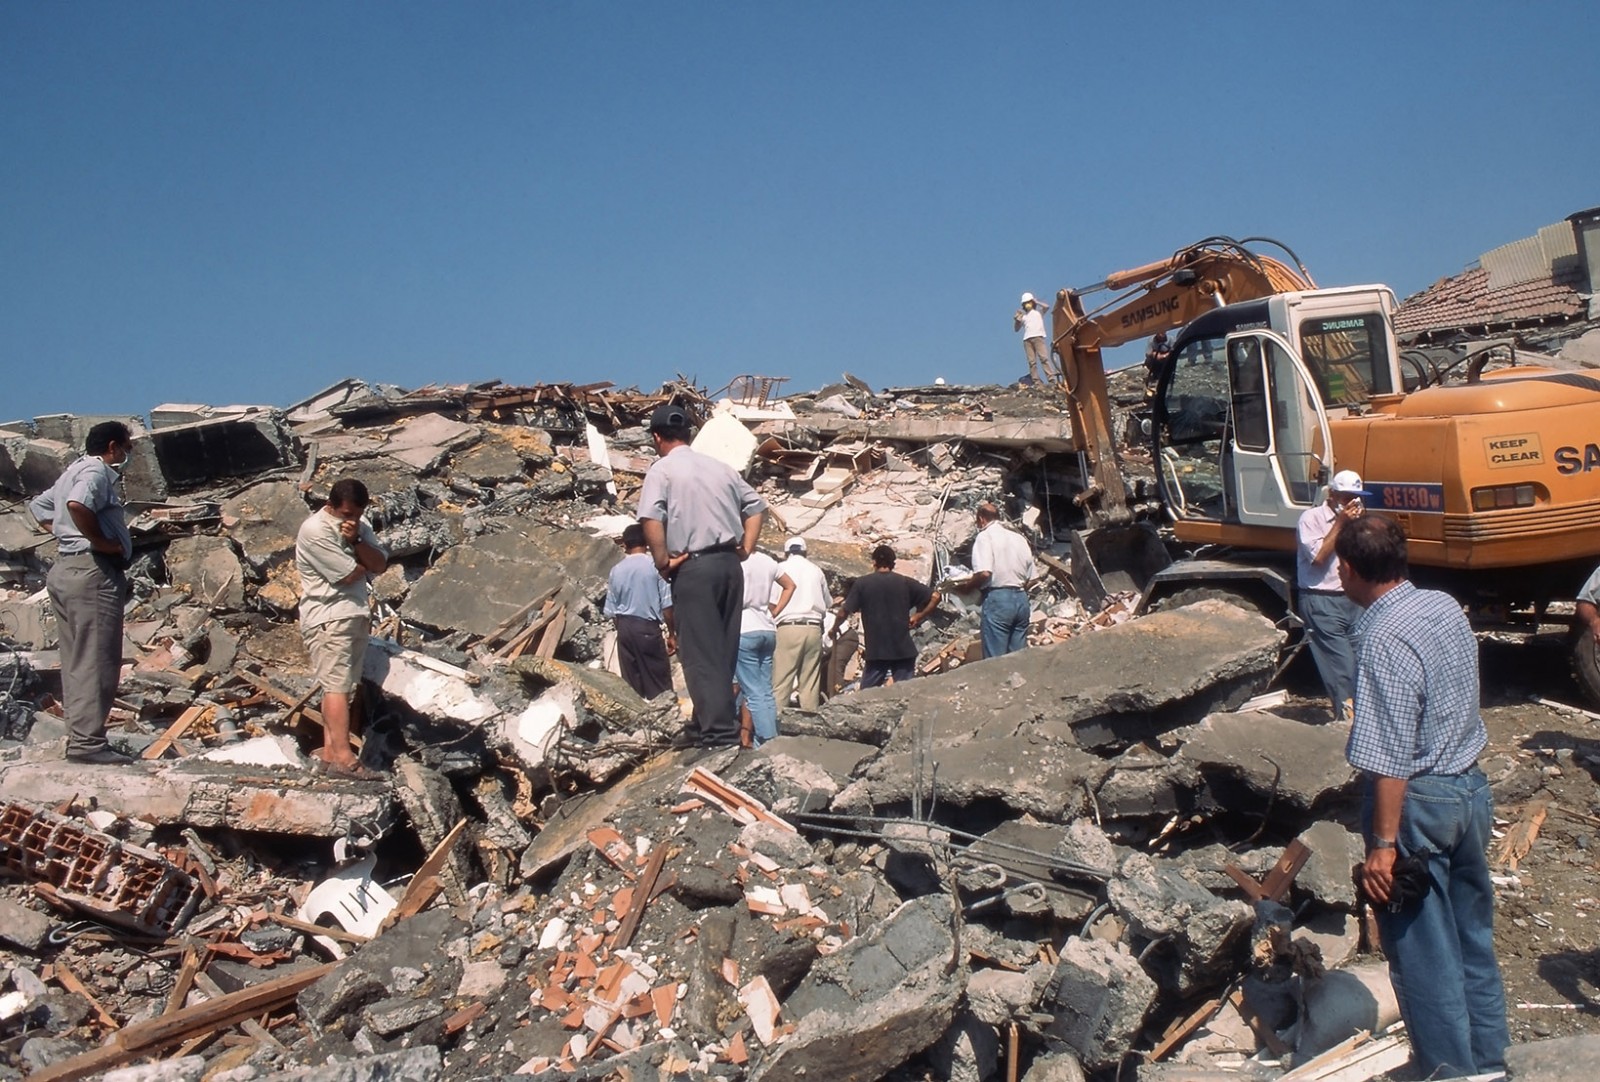 רעידת האדמה באיזמיט, 1999. (צילום: Sadik Gulec / Shutterstock.com)